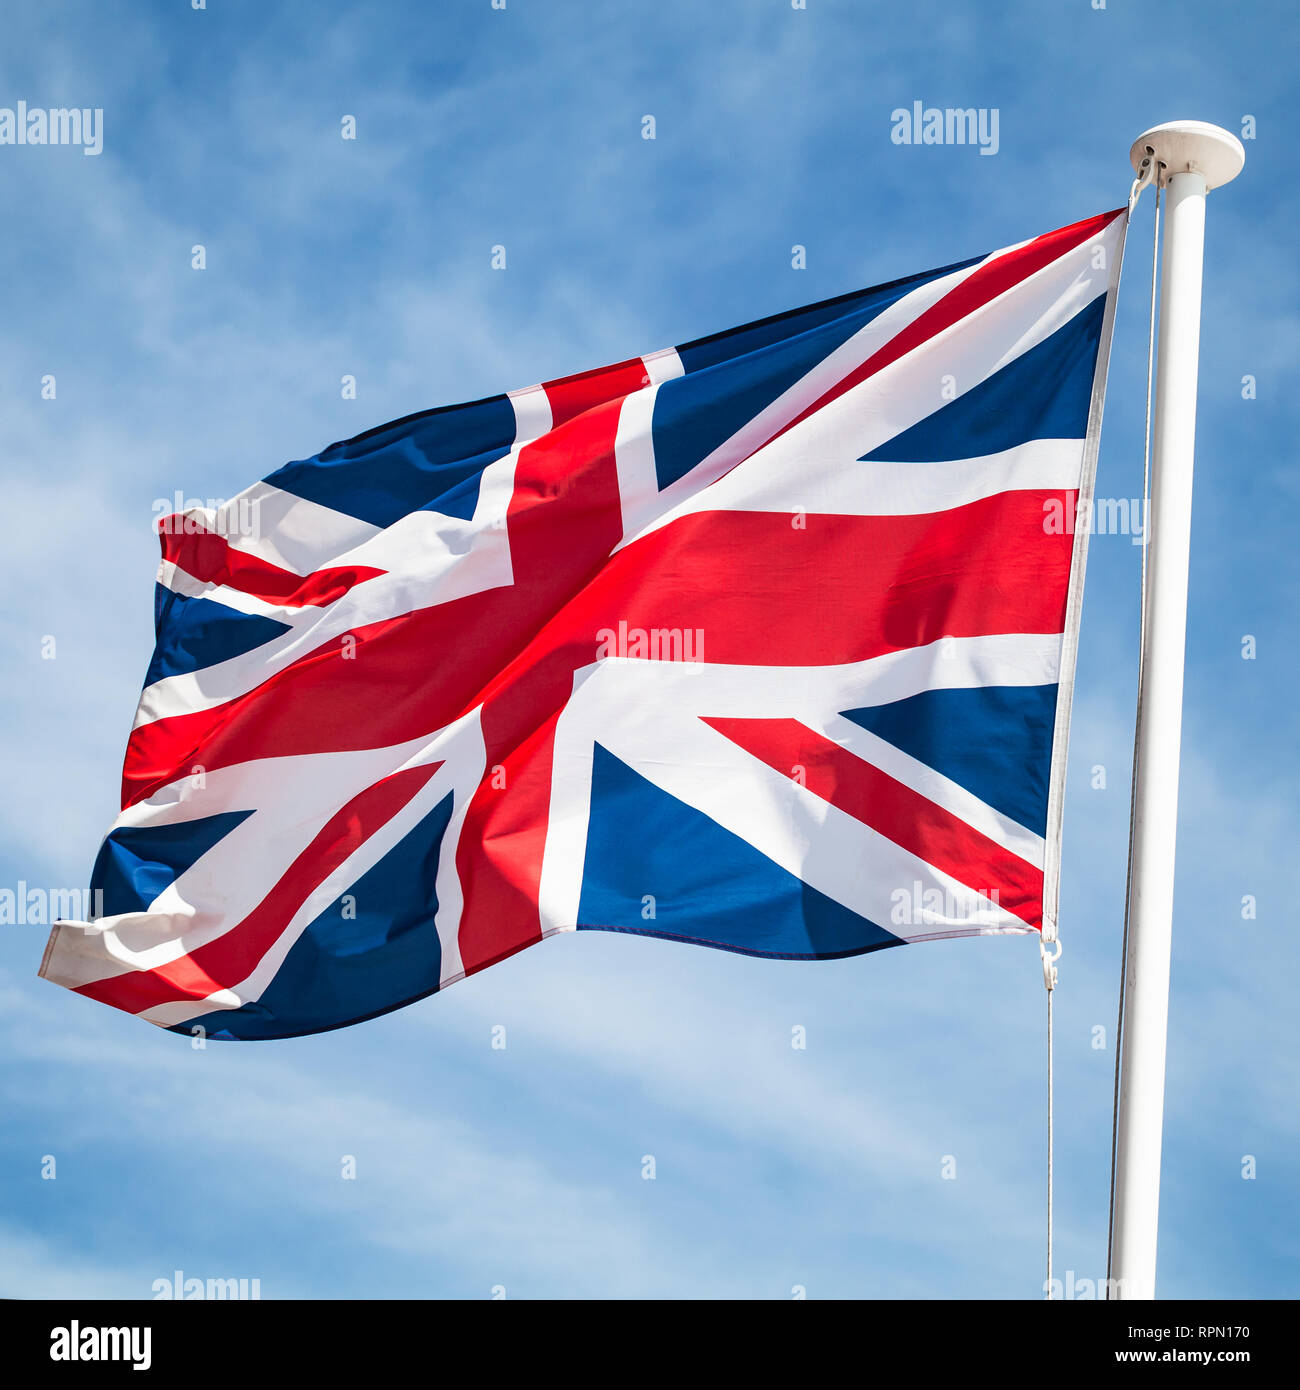 Le drapeau national du Royaume-Uni ou Union Jack, également connu sous le nom de l'Union européenne drapeaux sur le vent sur fond de ciel bleu. Square photo Banque D'Images